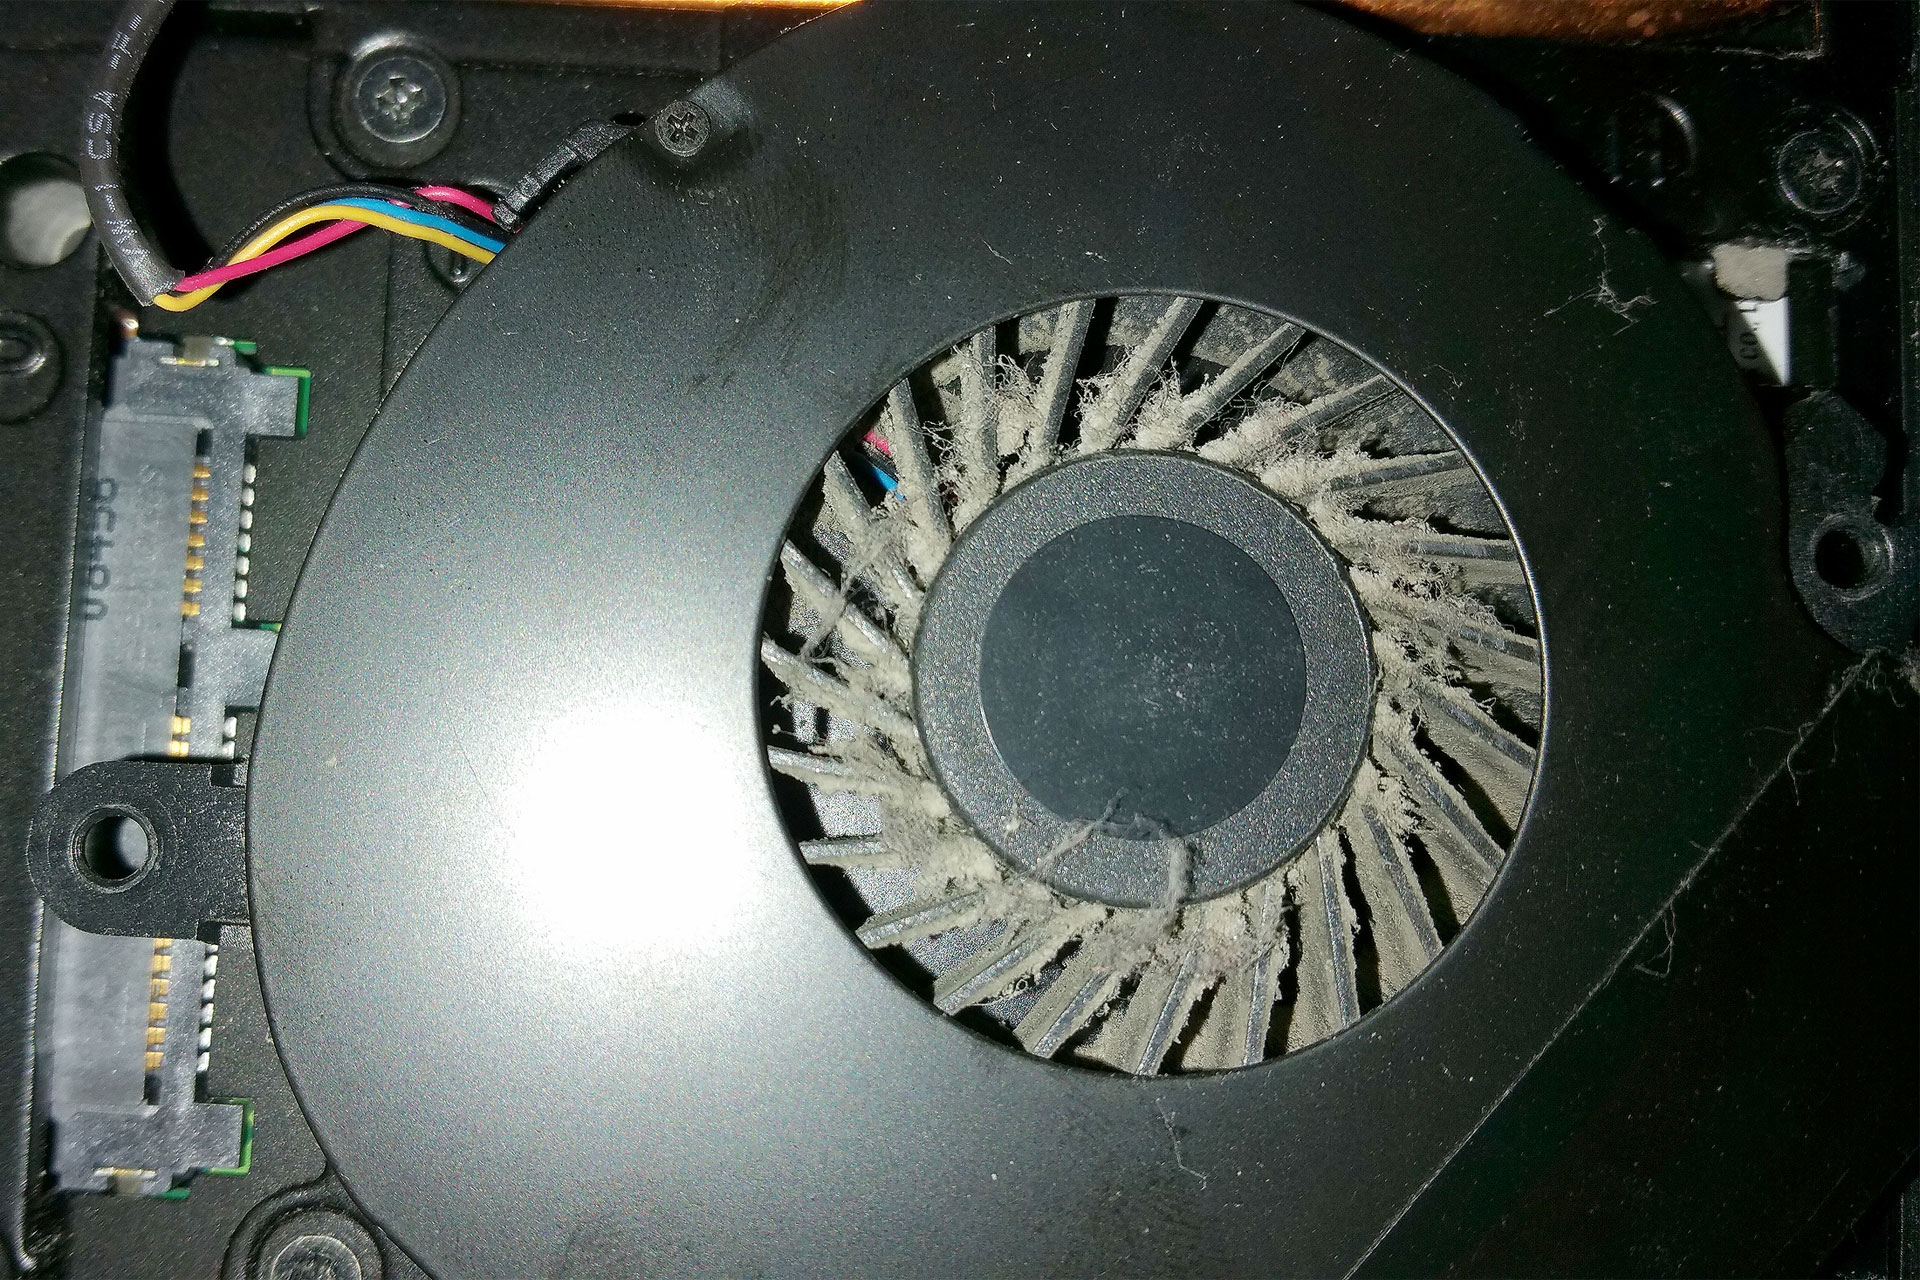 The fan was a bit dusty